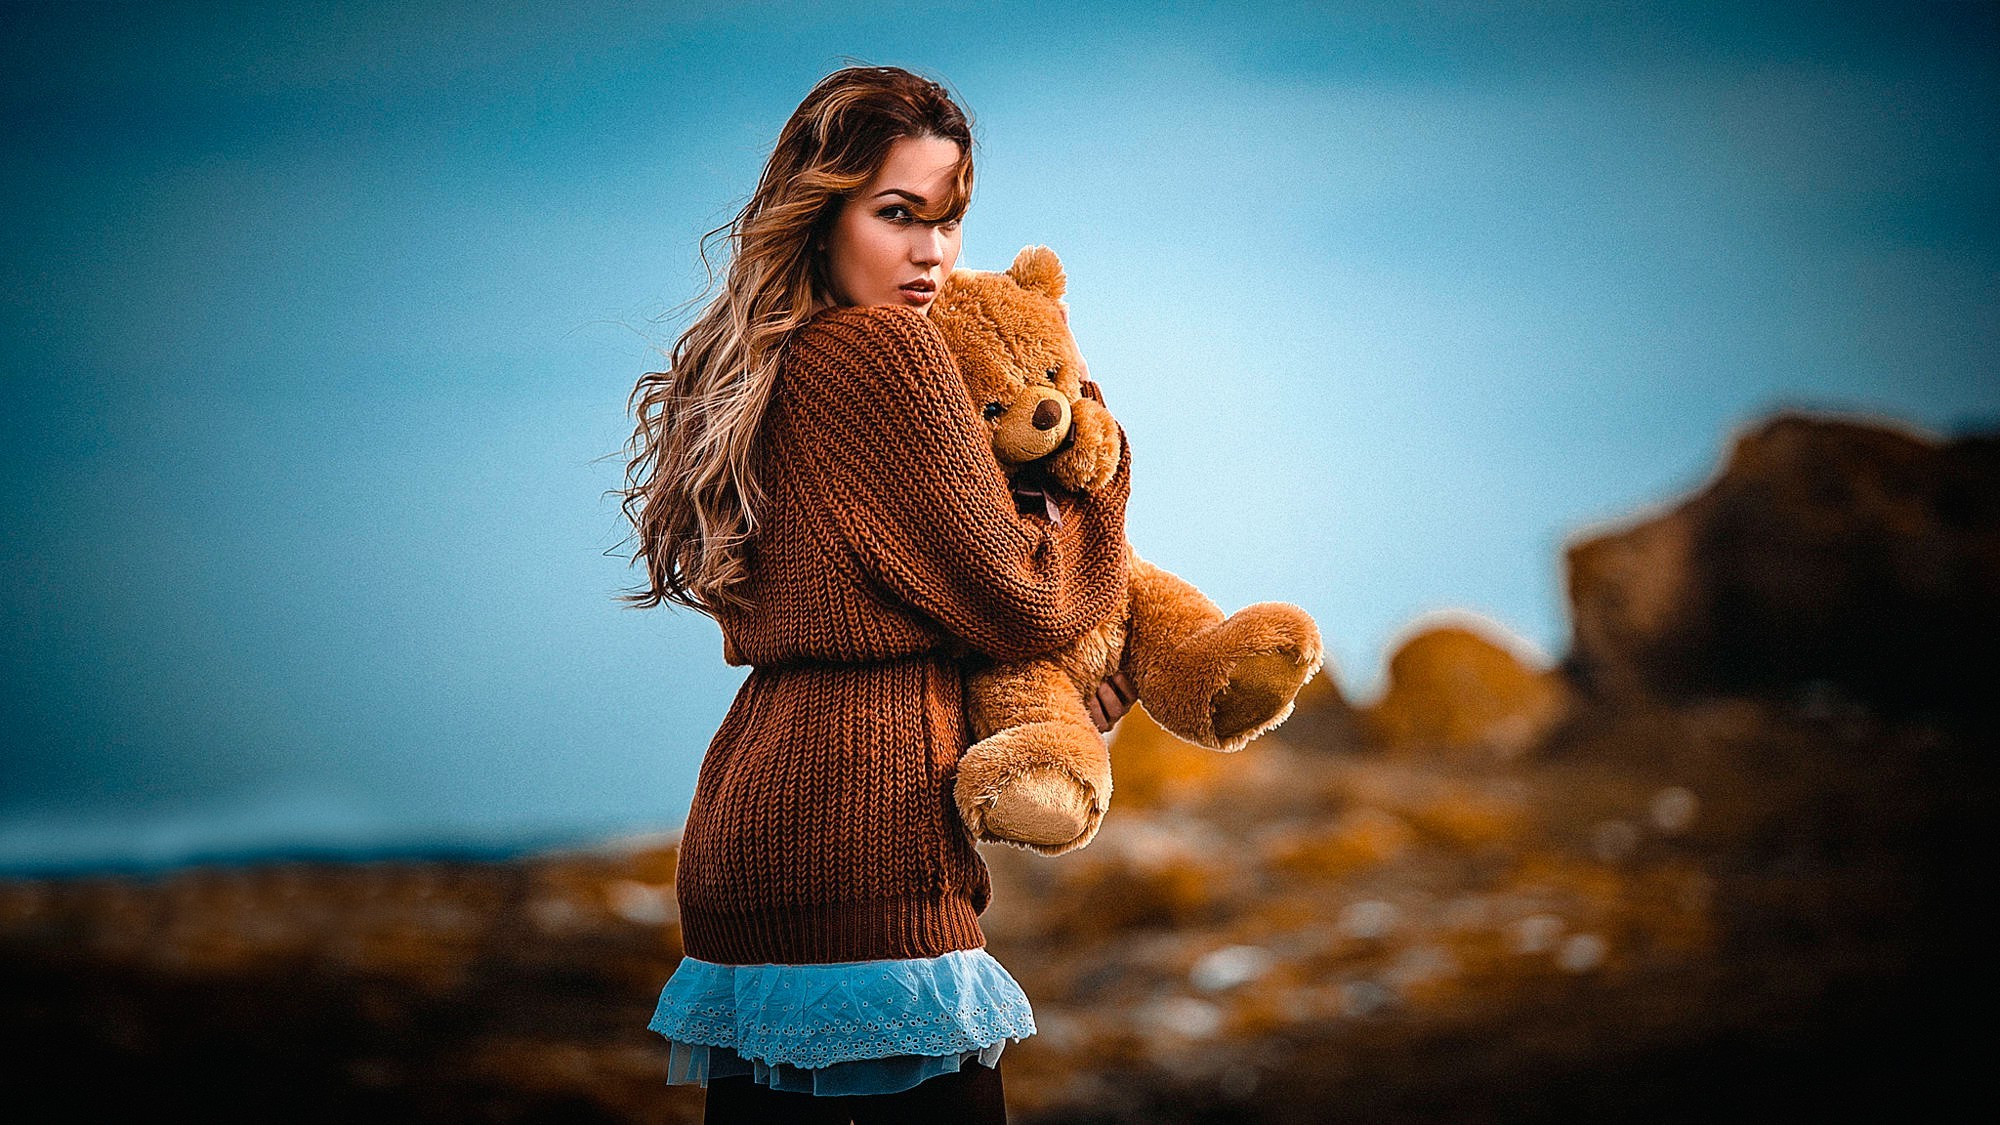 women Outdoors, Women, Model, Teddy Bears Wallpaper